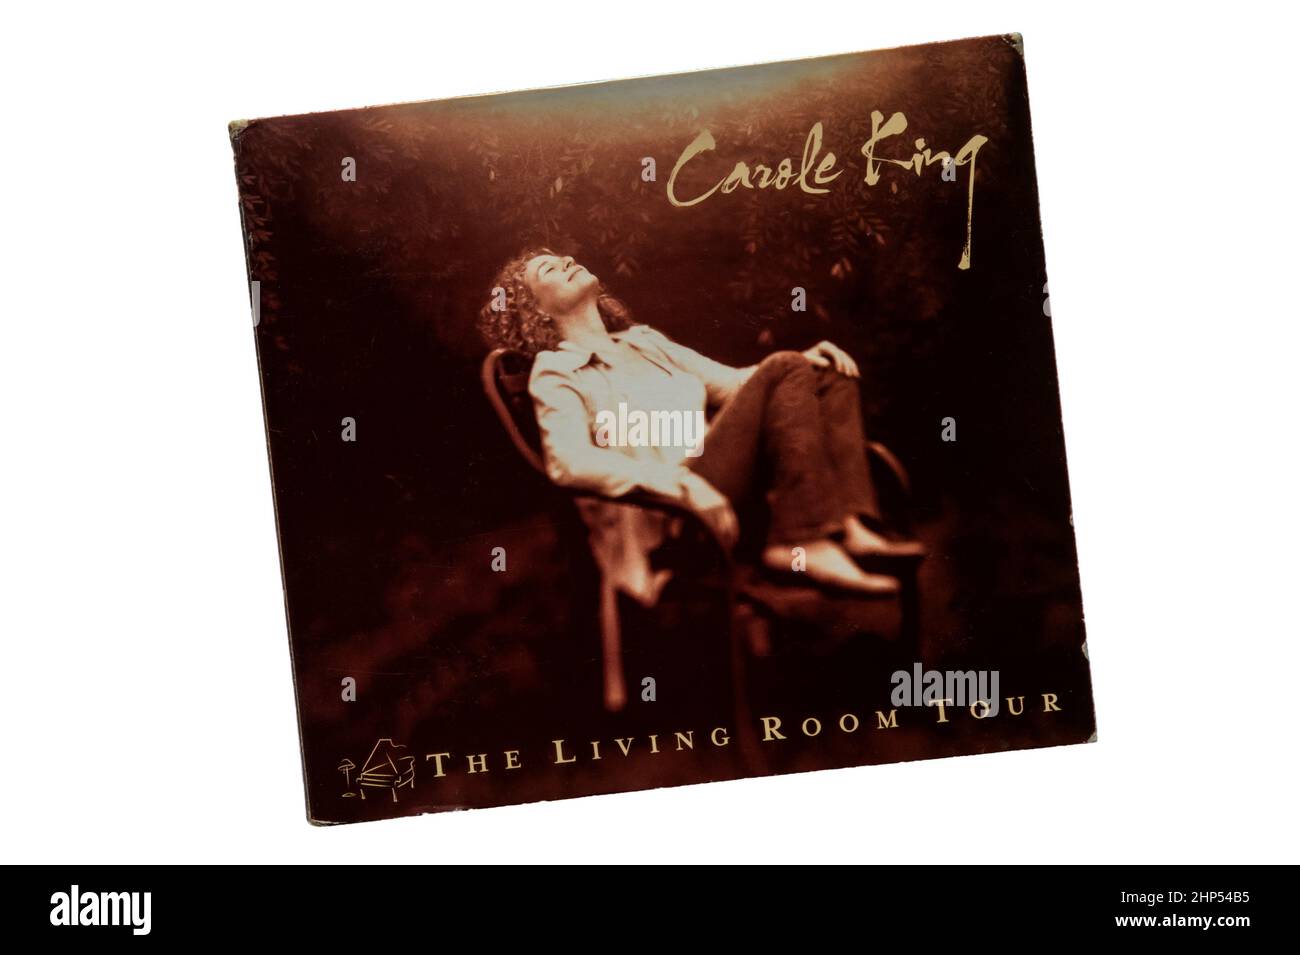 Die Living Room Tour war ein Live-Album von Carole King, das 2005 veröffentlicht wurde. Stockfoto